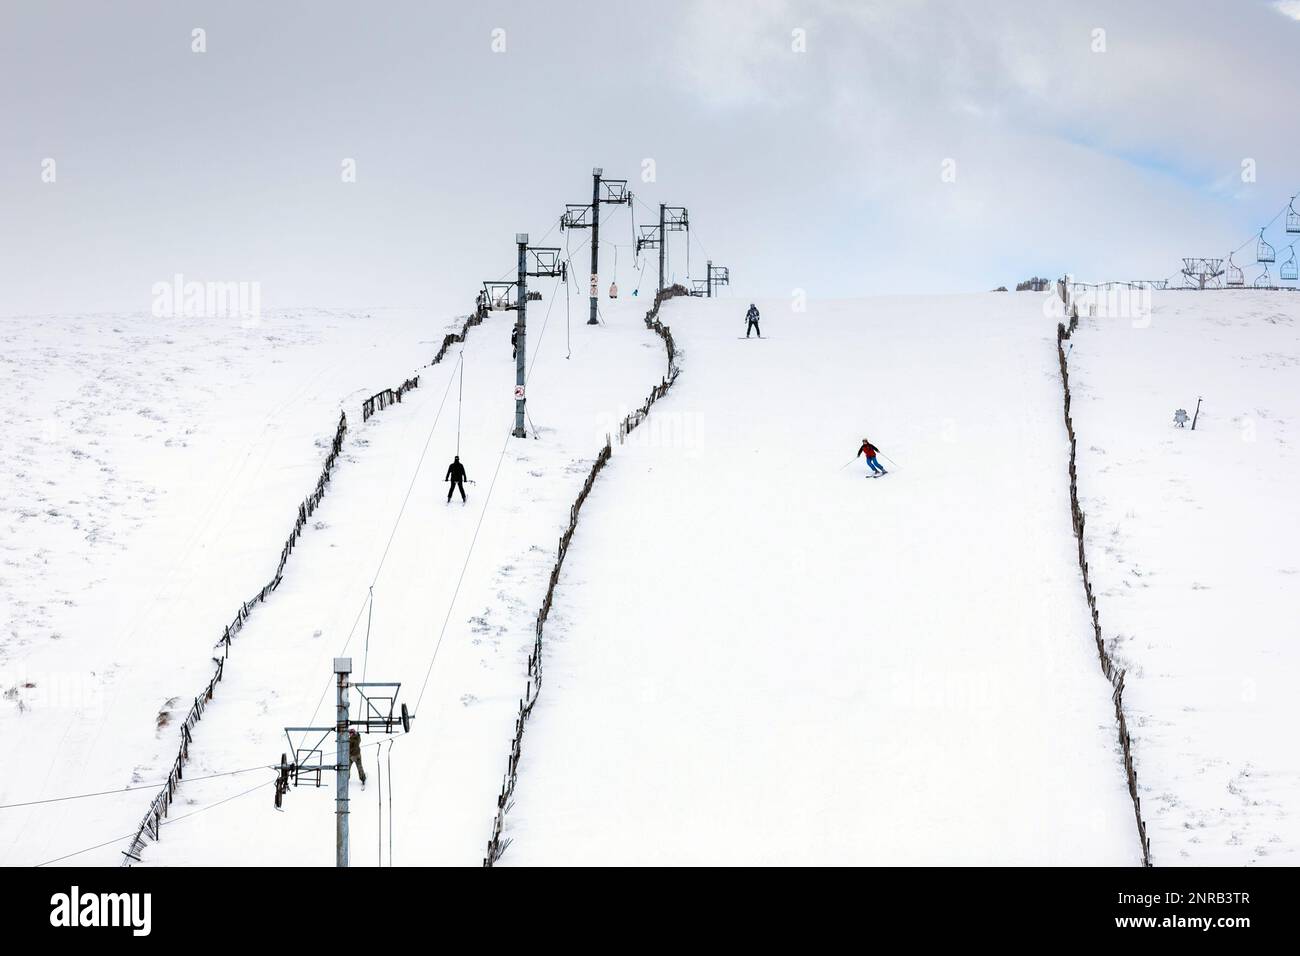 Foto del file datata 30/12/22 di persone che sciano al Lecht Ski Centre di Strathdon, nelle Cairngorms, nelle Highlands scozzesi, in quanto due importanti atleti invernali britannici hanno condannato una gara di sci svedese per aver accettato la sponsorizzazione da parte di aziende ad alto tenore di carbonio. Foto Stock